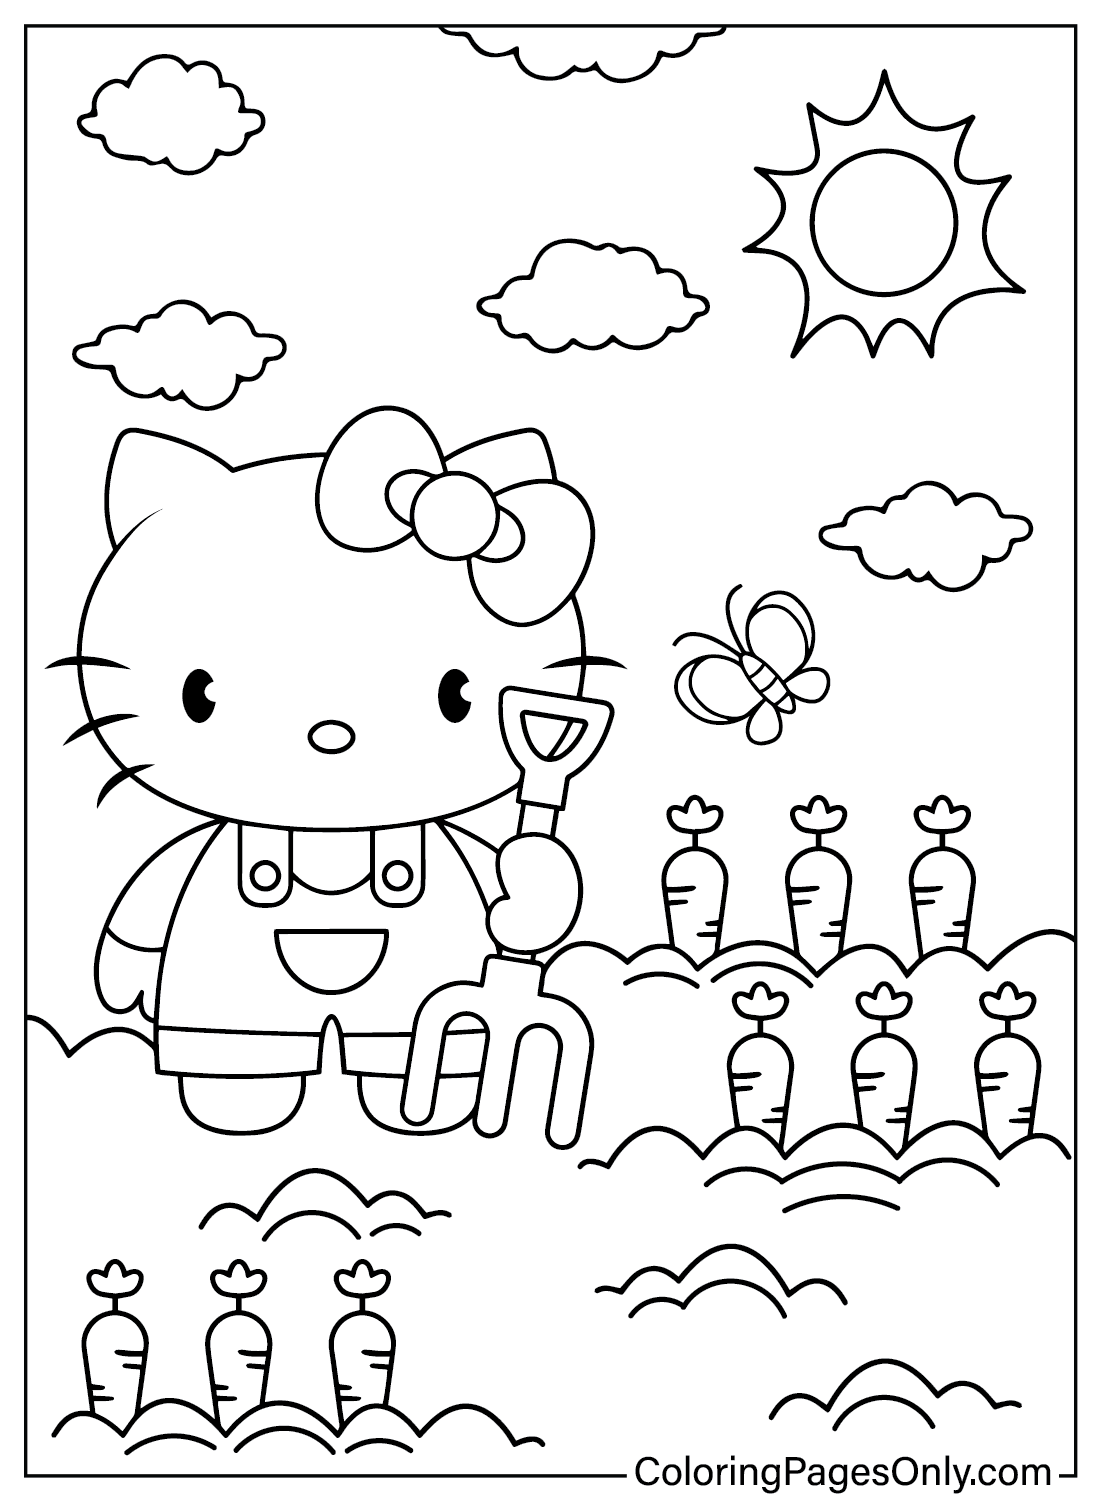 Página para colorir da Hello Kitty para crianças